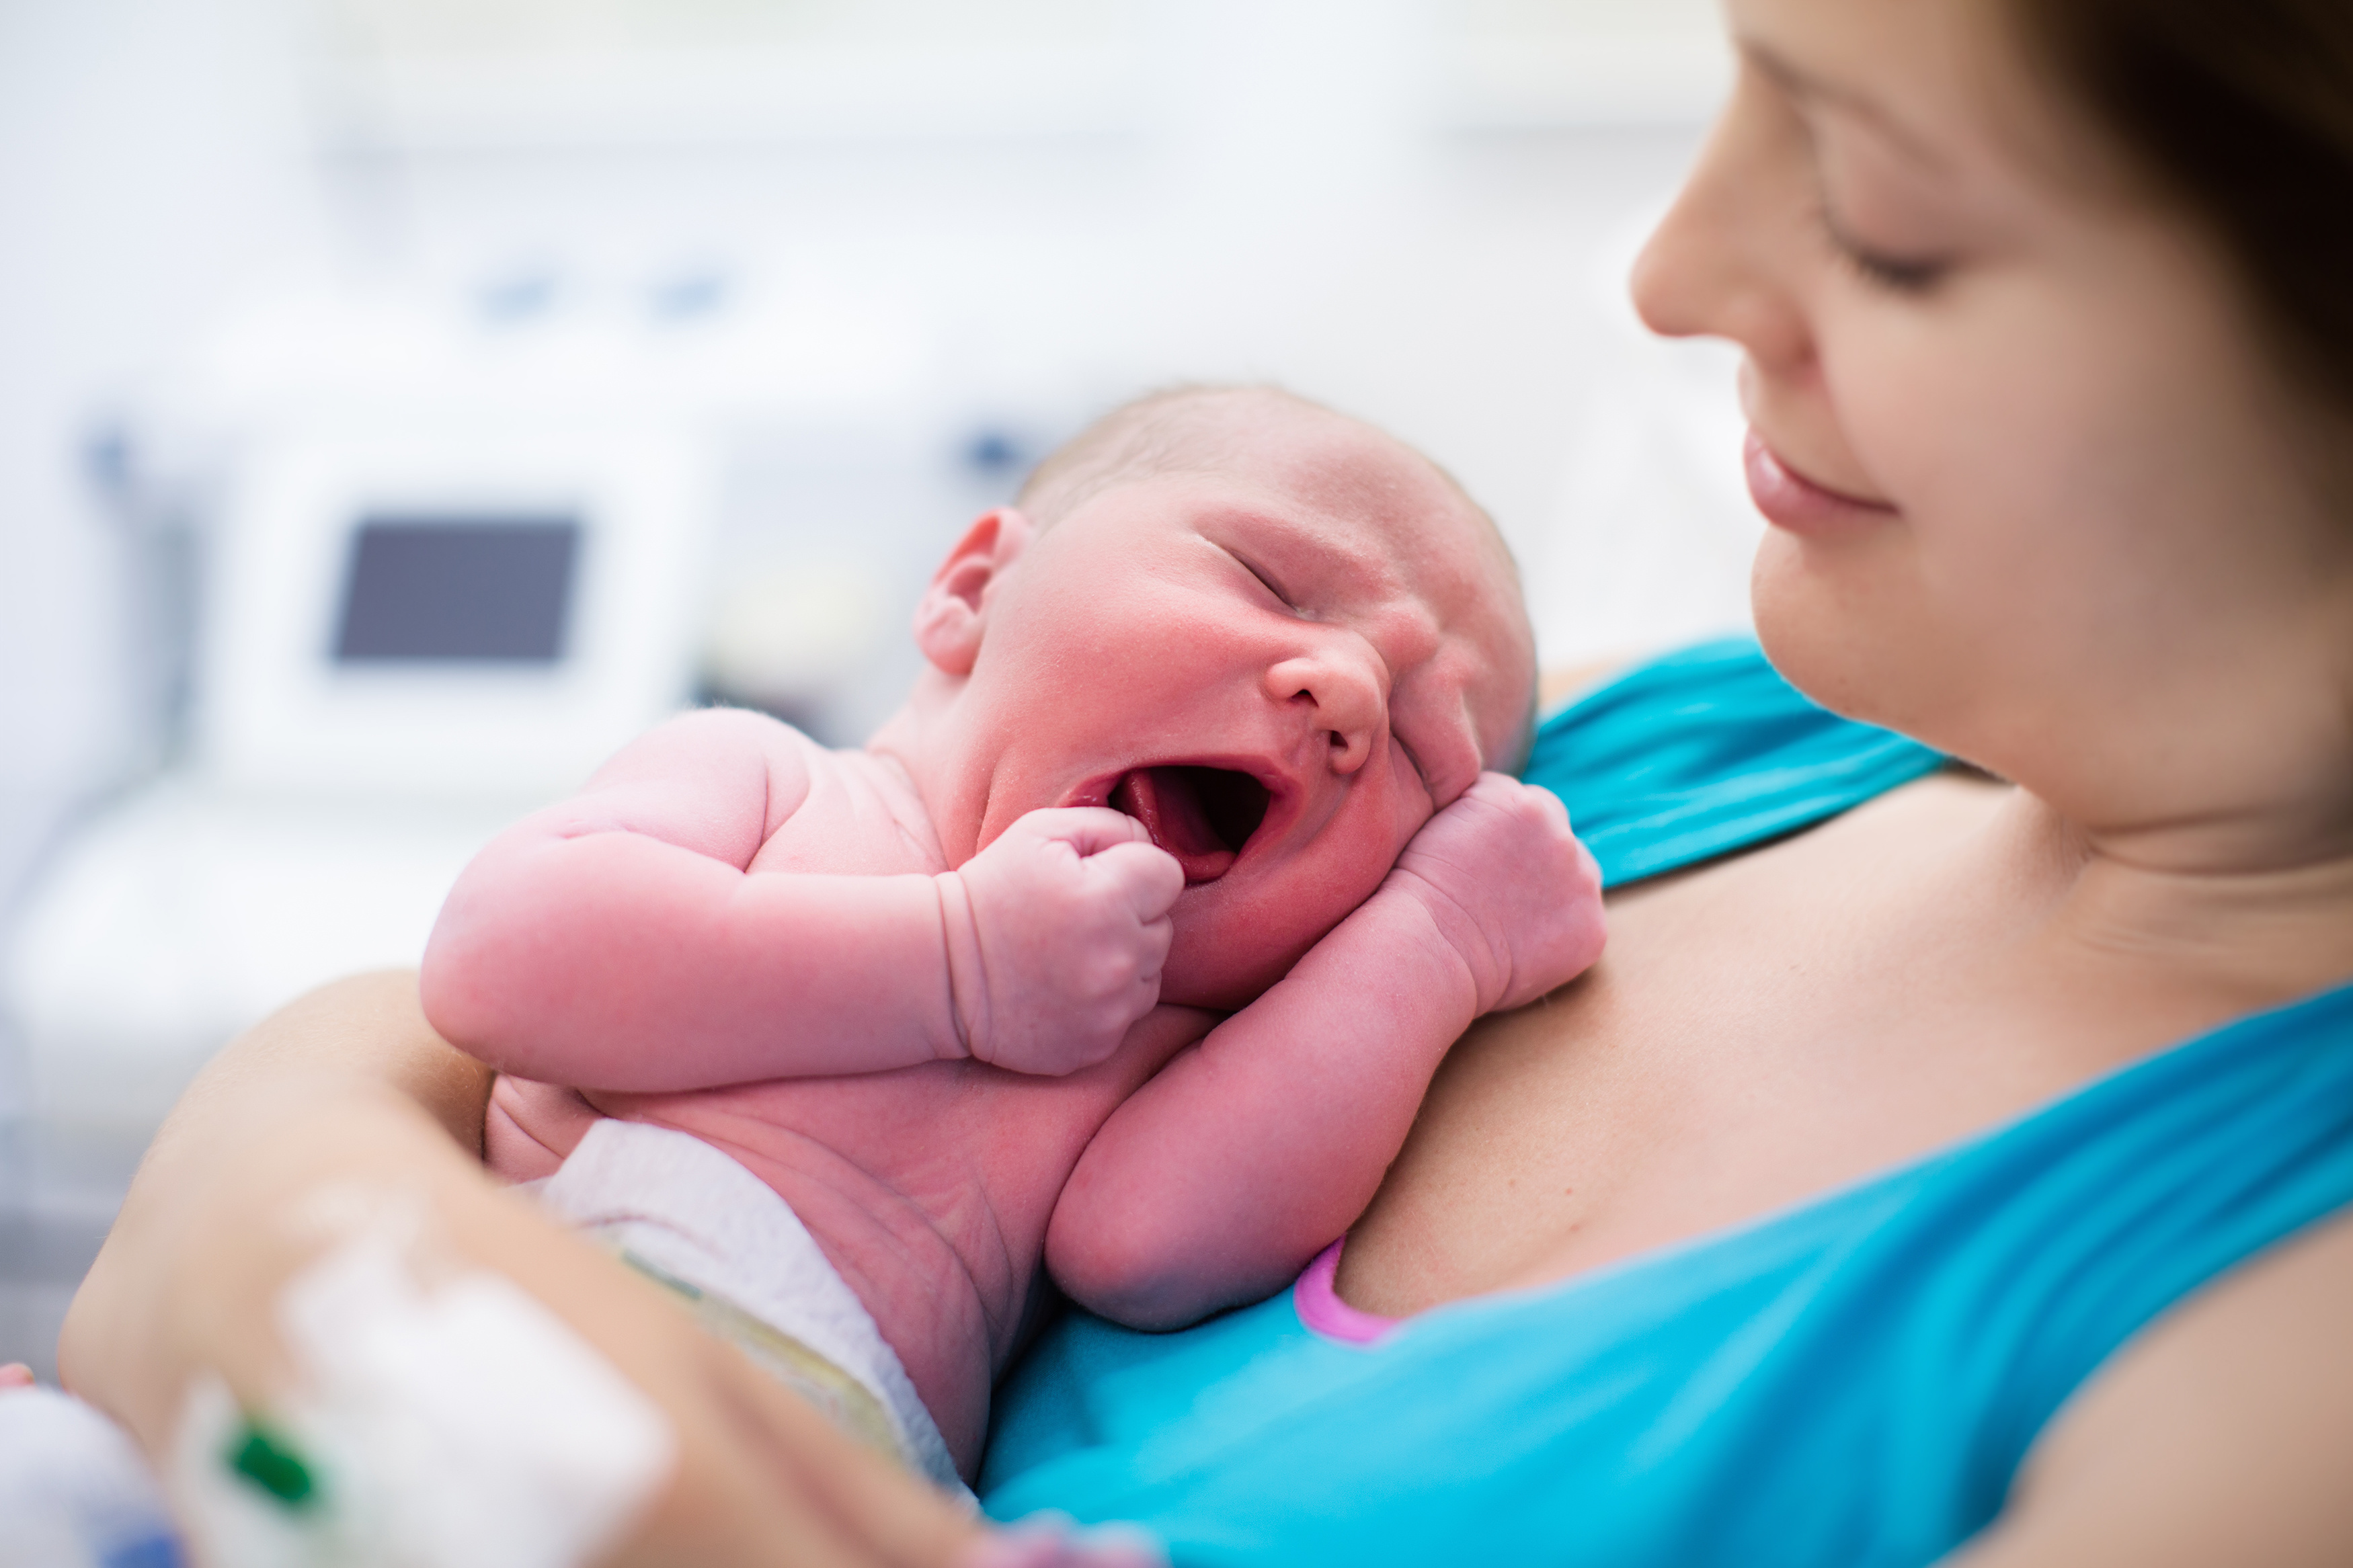 Zalety pozycji wertykalnych podczas porodu - rozmowa z położną 